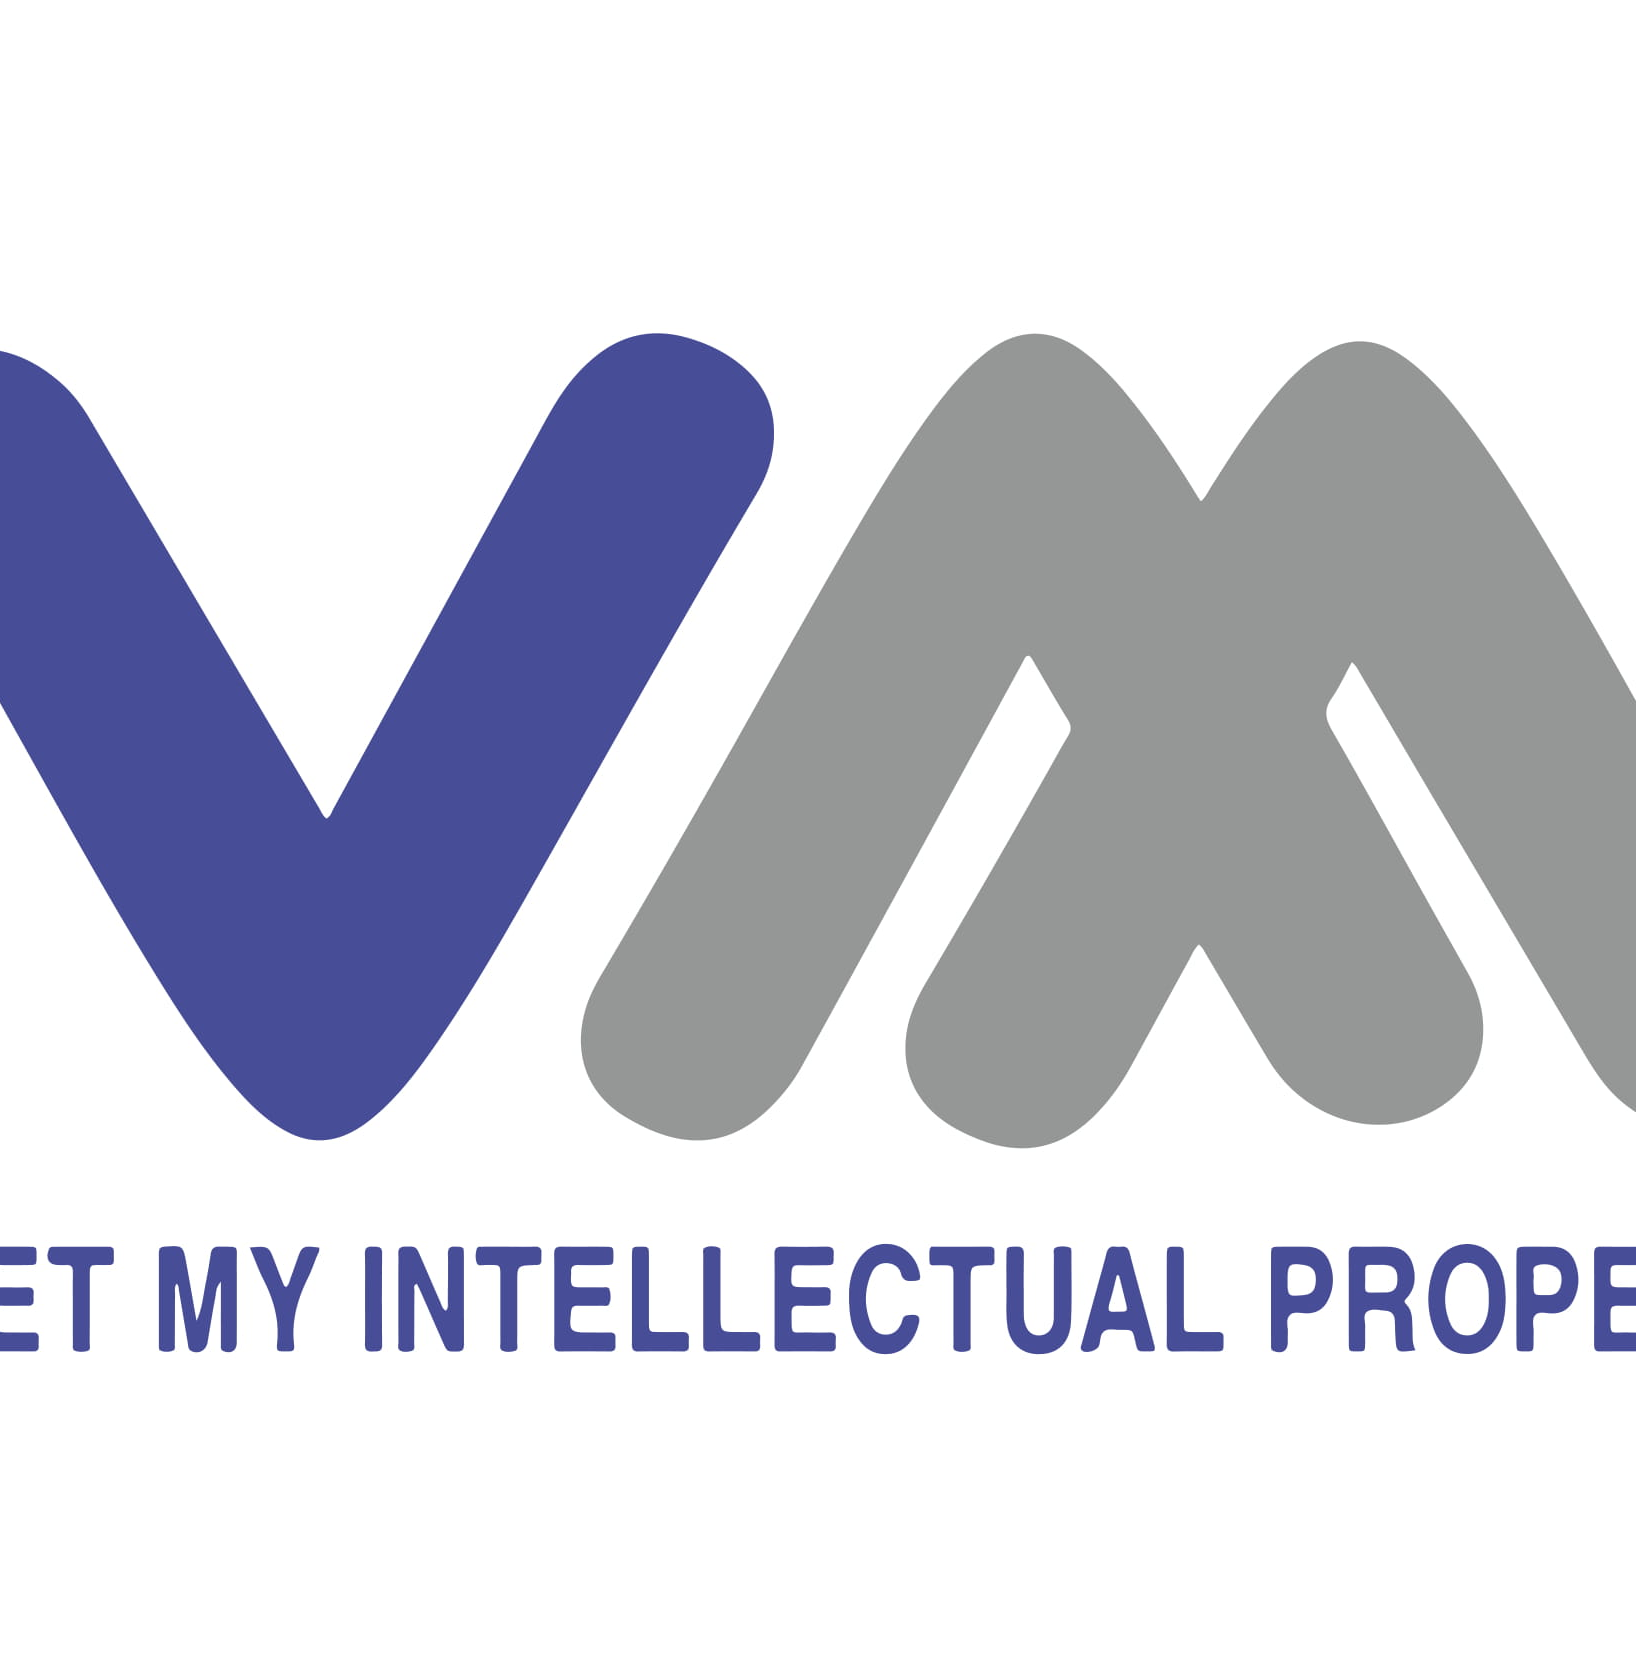 Logo Công ty Cổ phần Sở hữu Trí tuệ Việt Mỹ